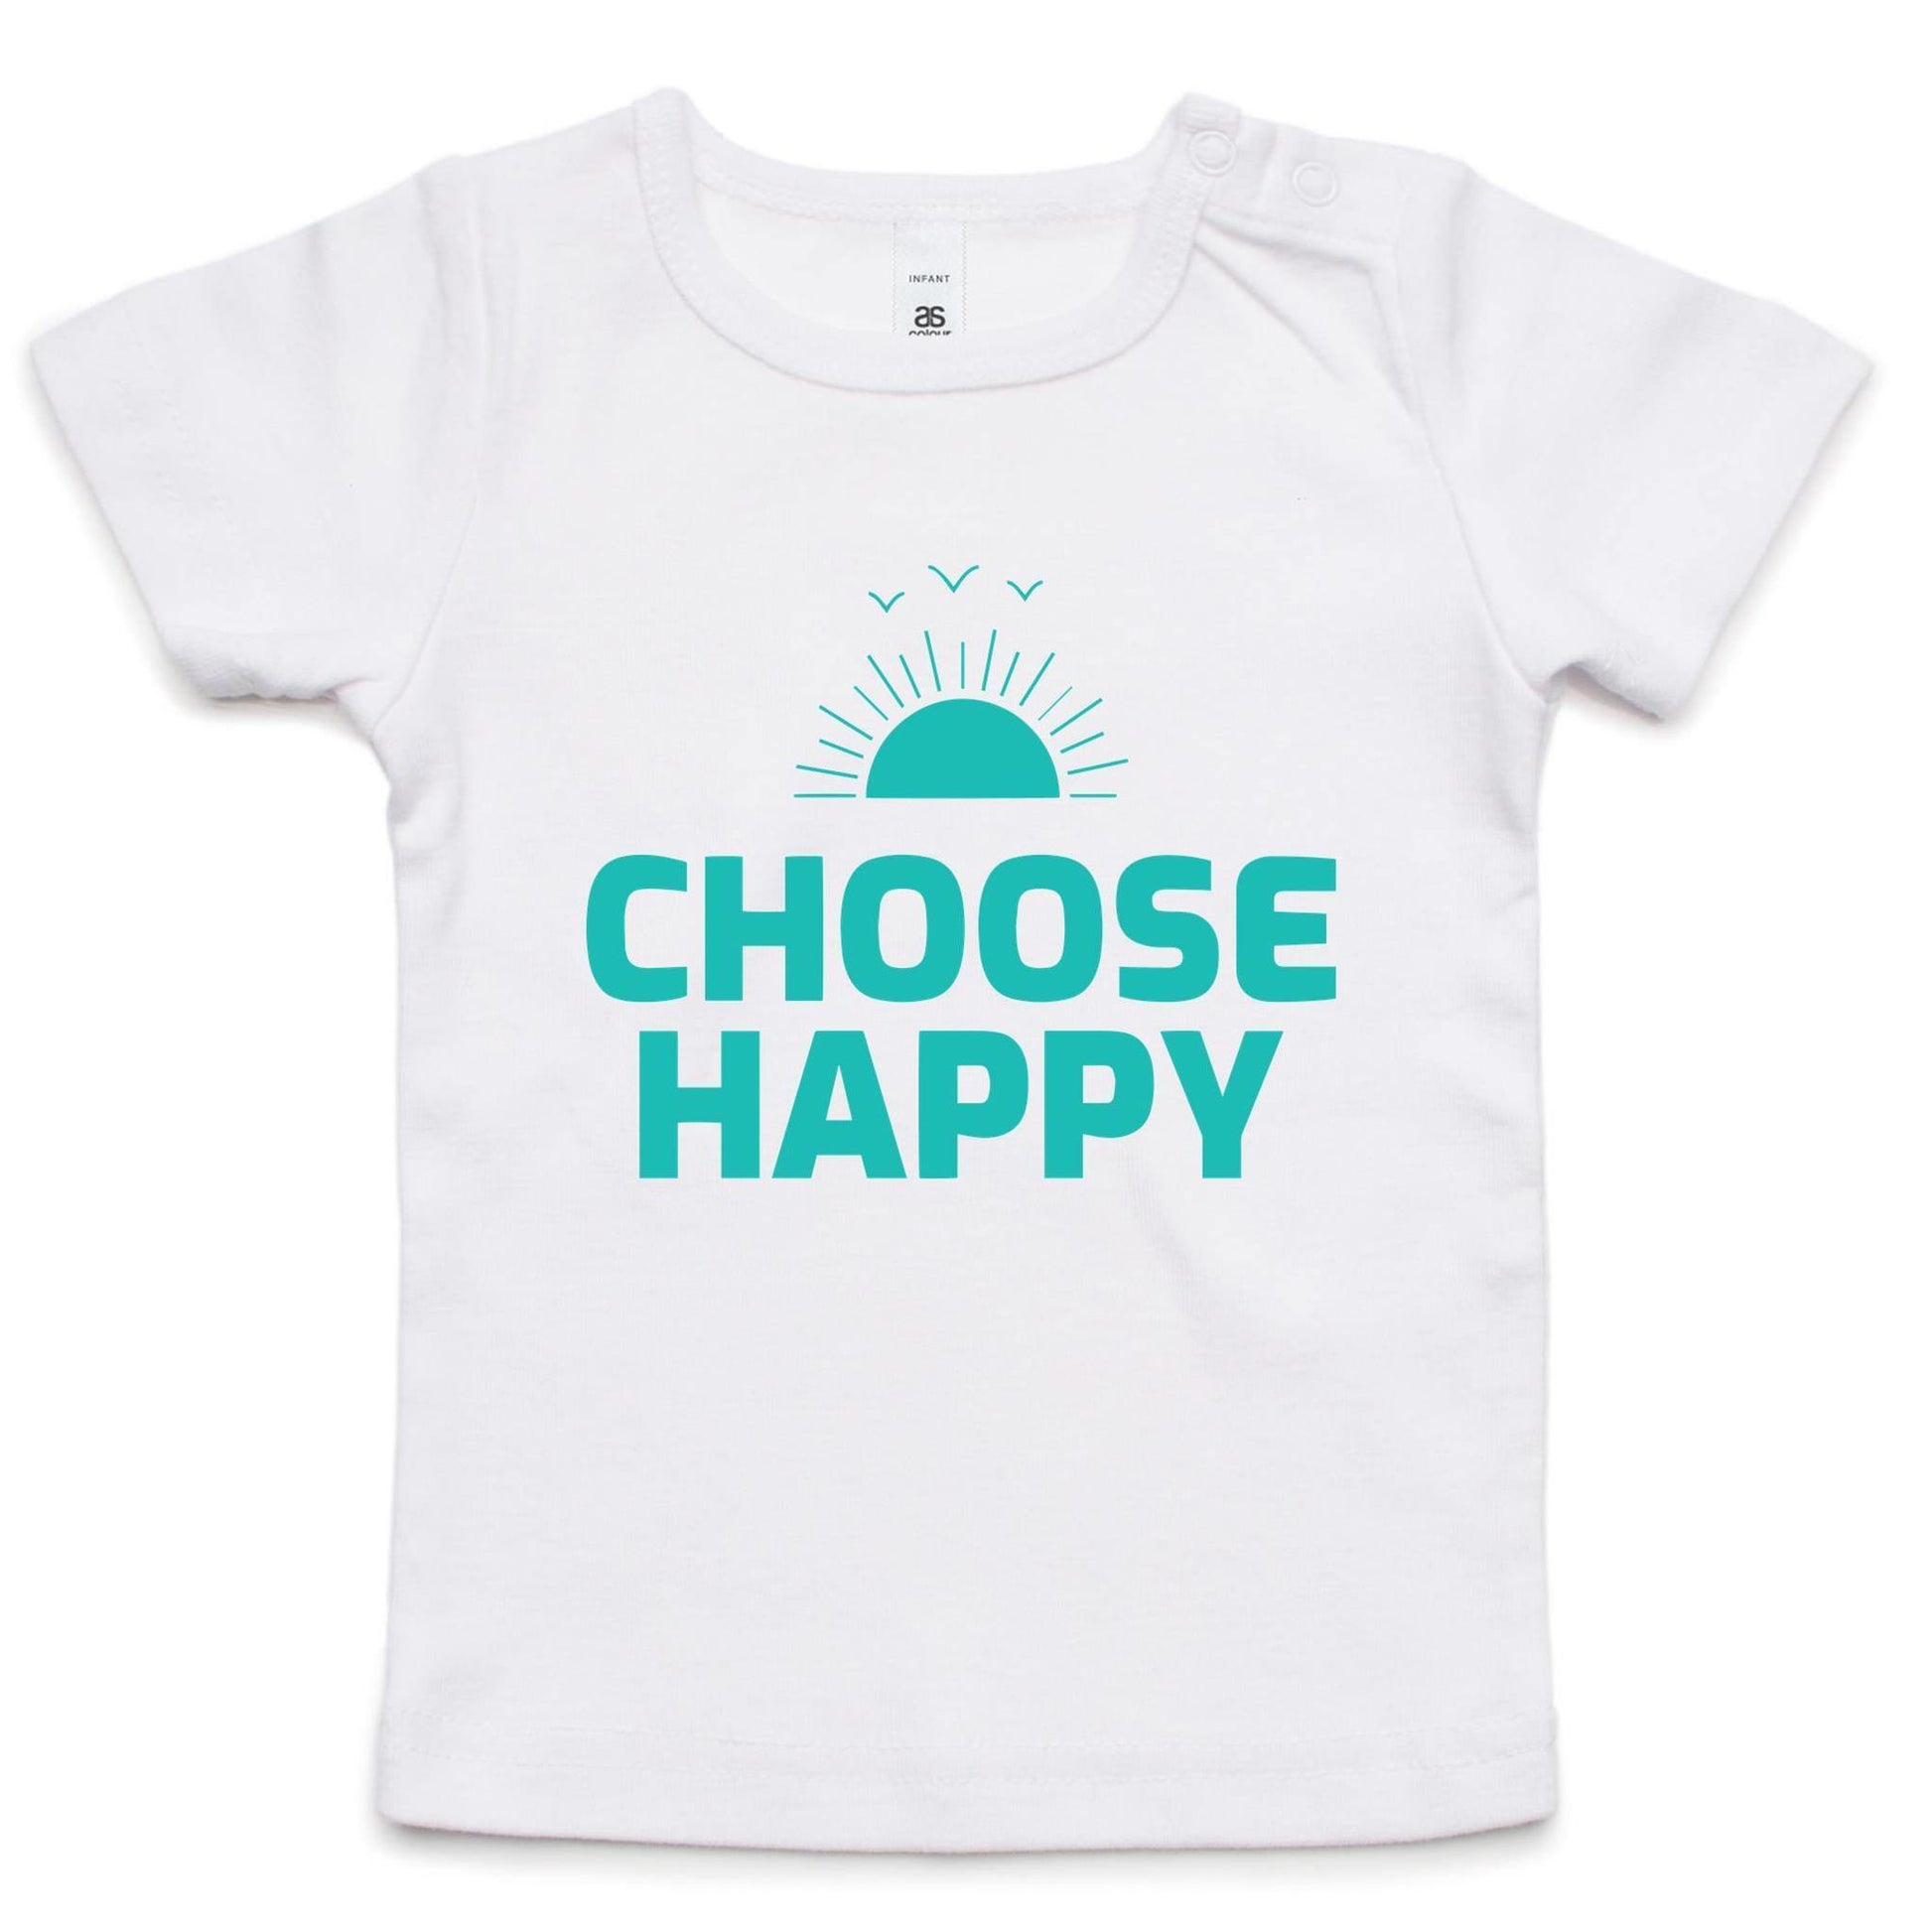 Choose Happy - Baby T-shirt White Baby T-shirt kids